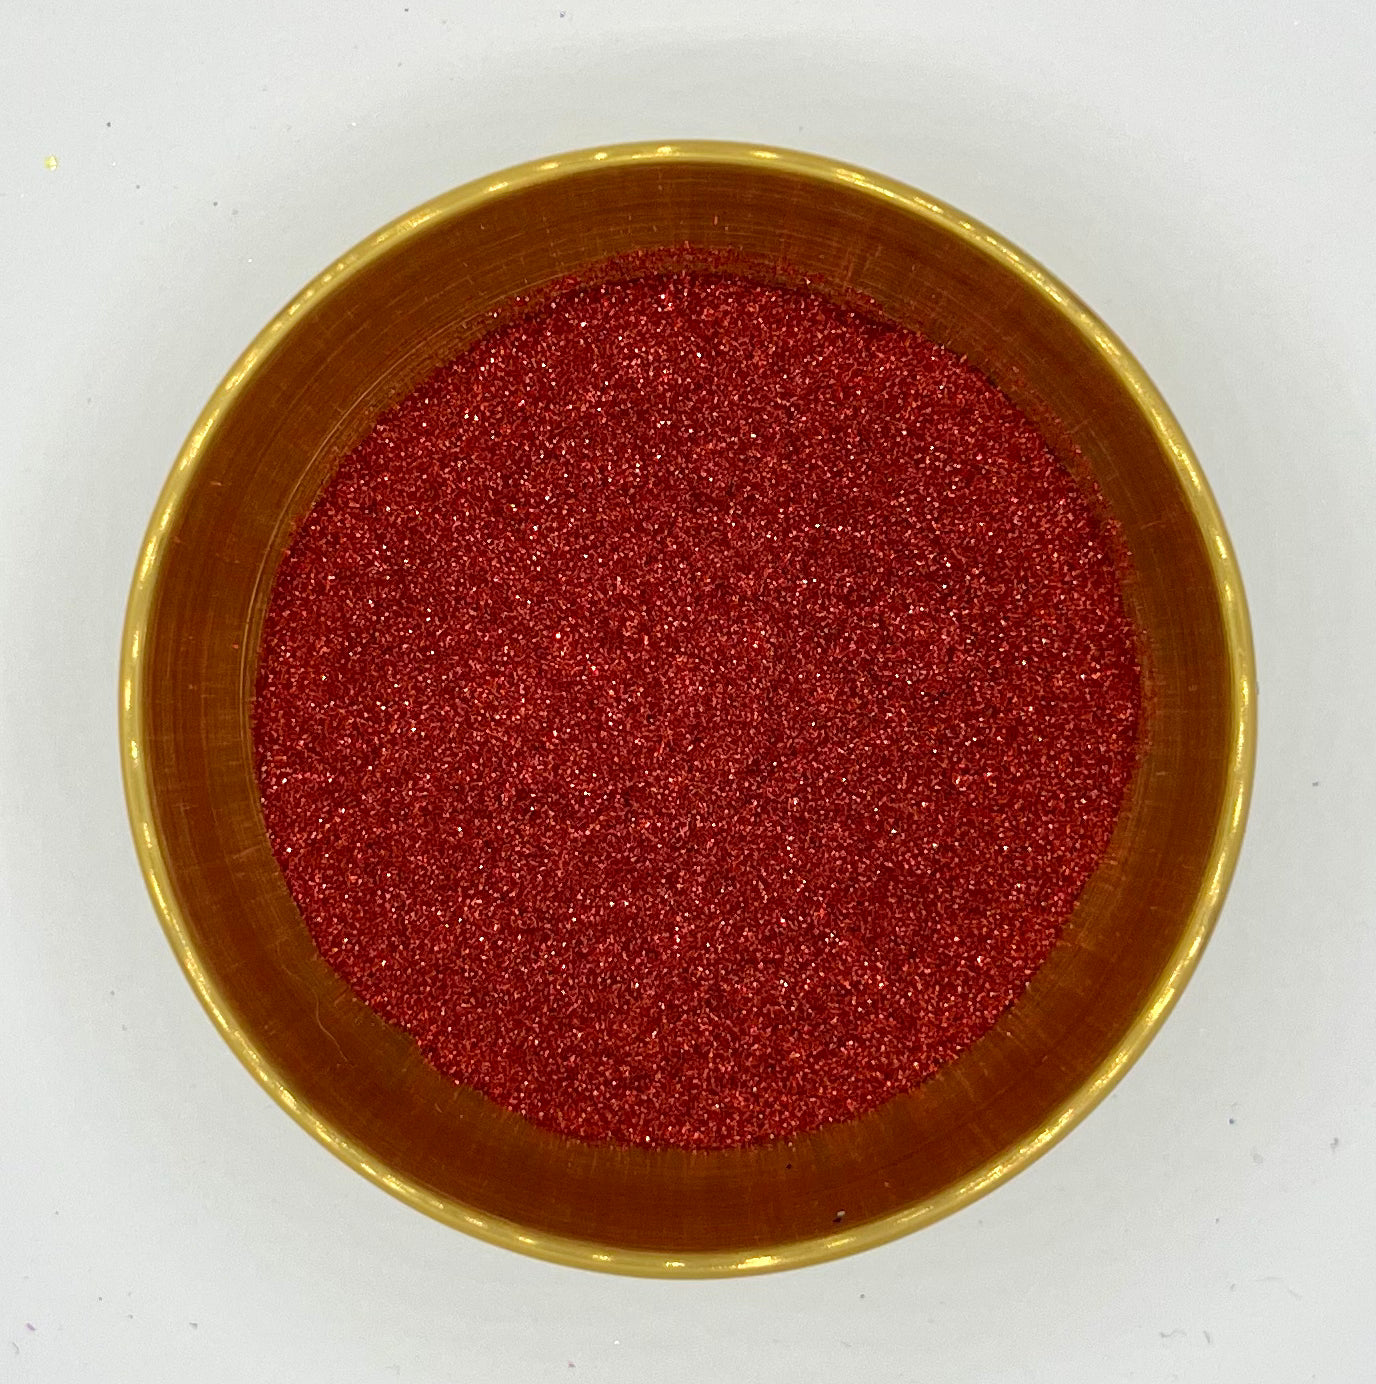 Billie Jean Ultra Fine Red Biodegradable Glitter